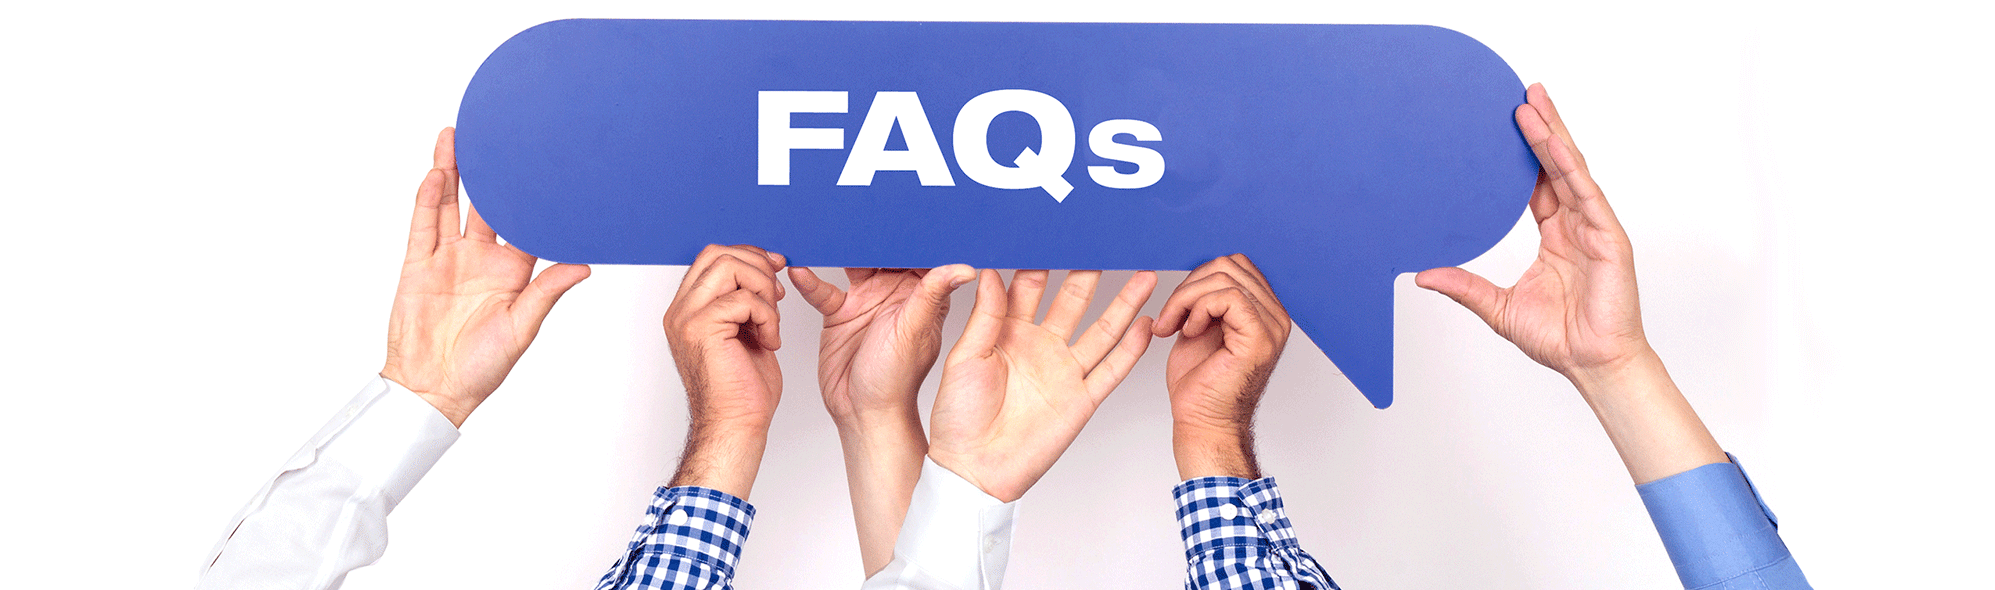 Respondemos a tus preguntas y dudas en nuestra sección de FAQs